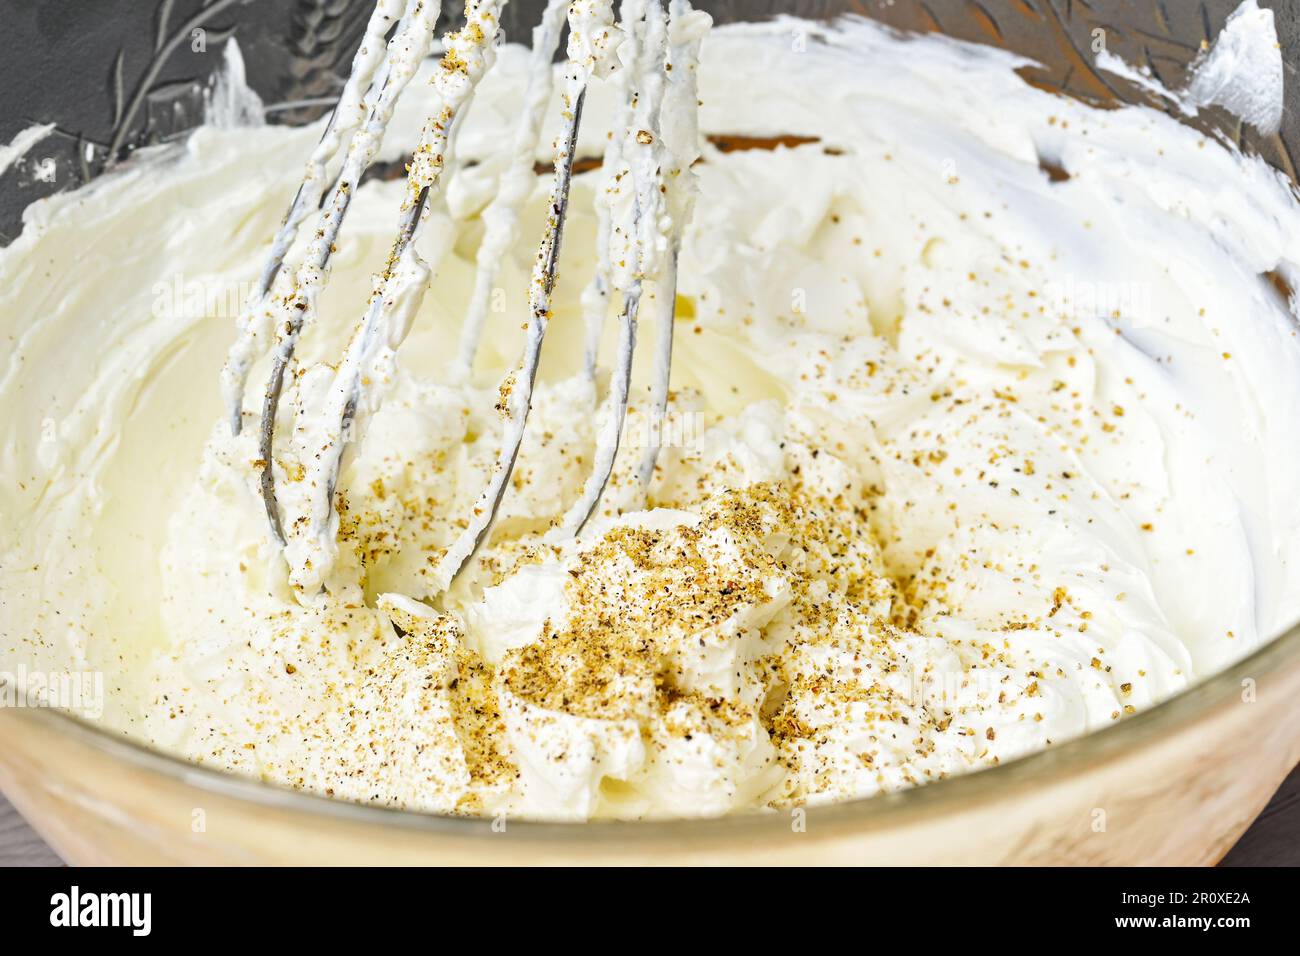 Le fouet mélange une généreuse trempette de fromage de chèvre à la crème avec des noix moulées et du poivre dans un bol en verre, une concentration sélectionnée, une profondeur de champ étroite Banque D'Images